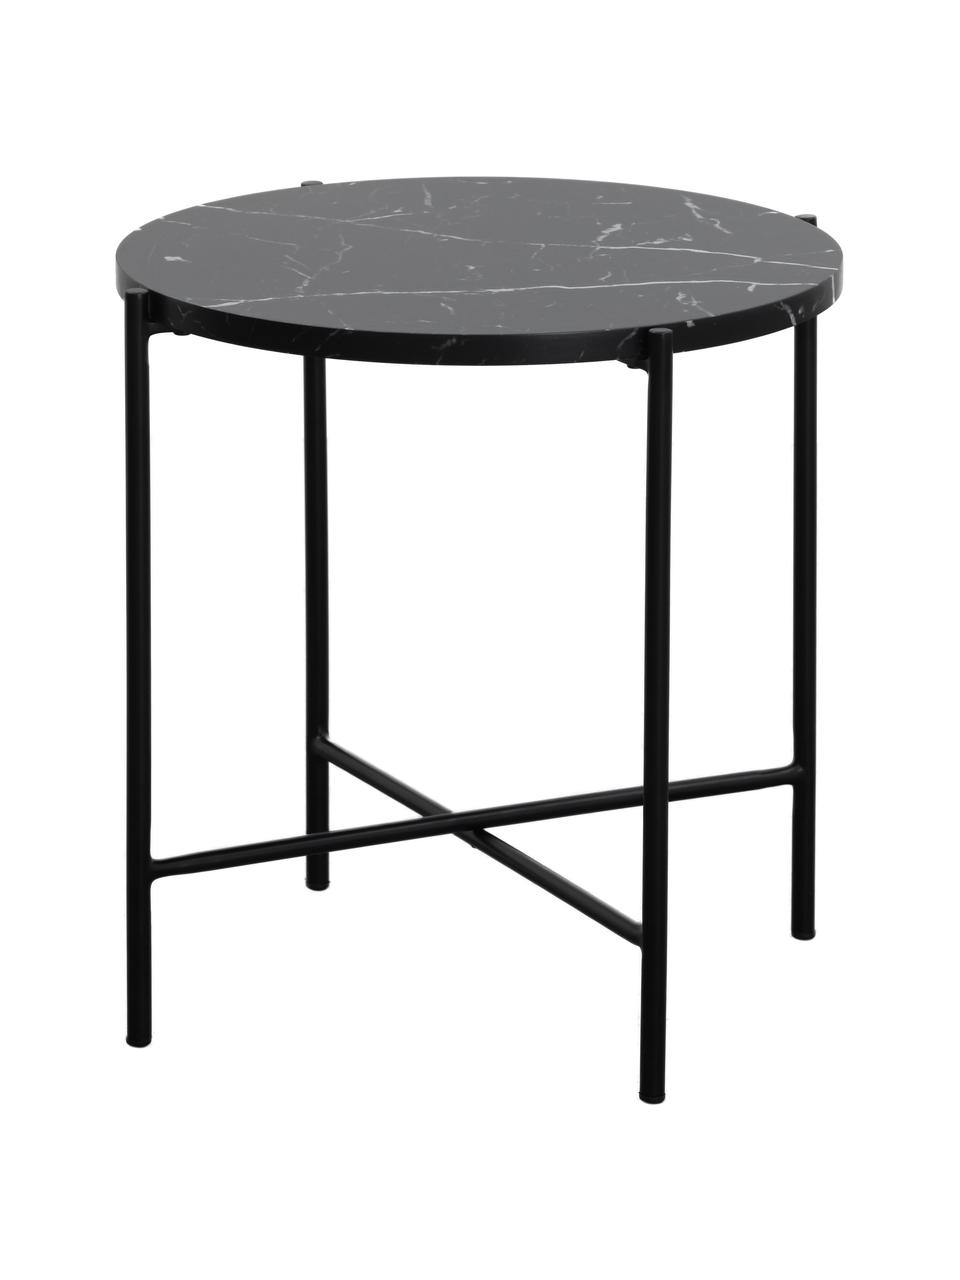 Odkládací stolek v mramorovém vzhledu Fria, Deska stolu: matná černá, mramorovaná, rám: matná černá, Ø 45 cm, V 46 cm